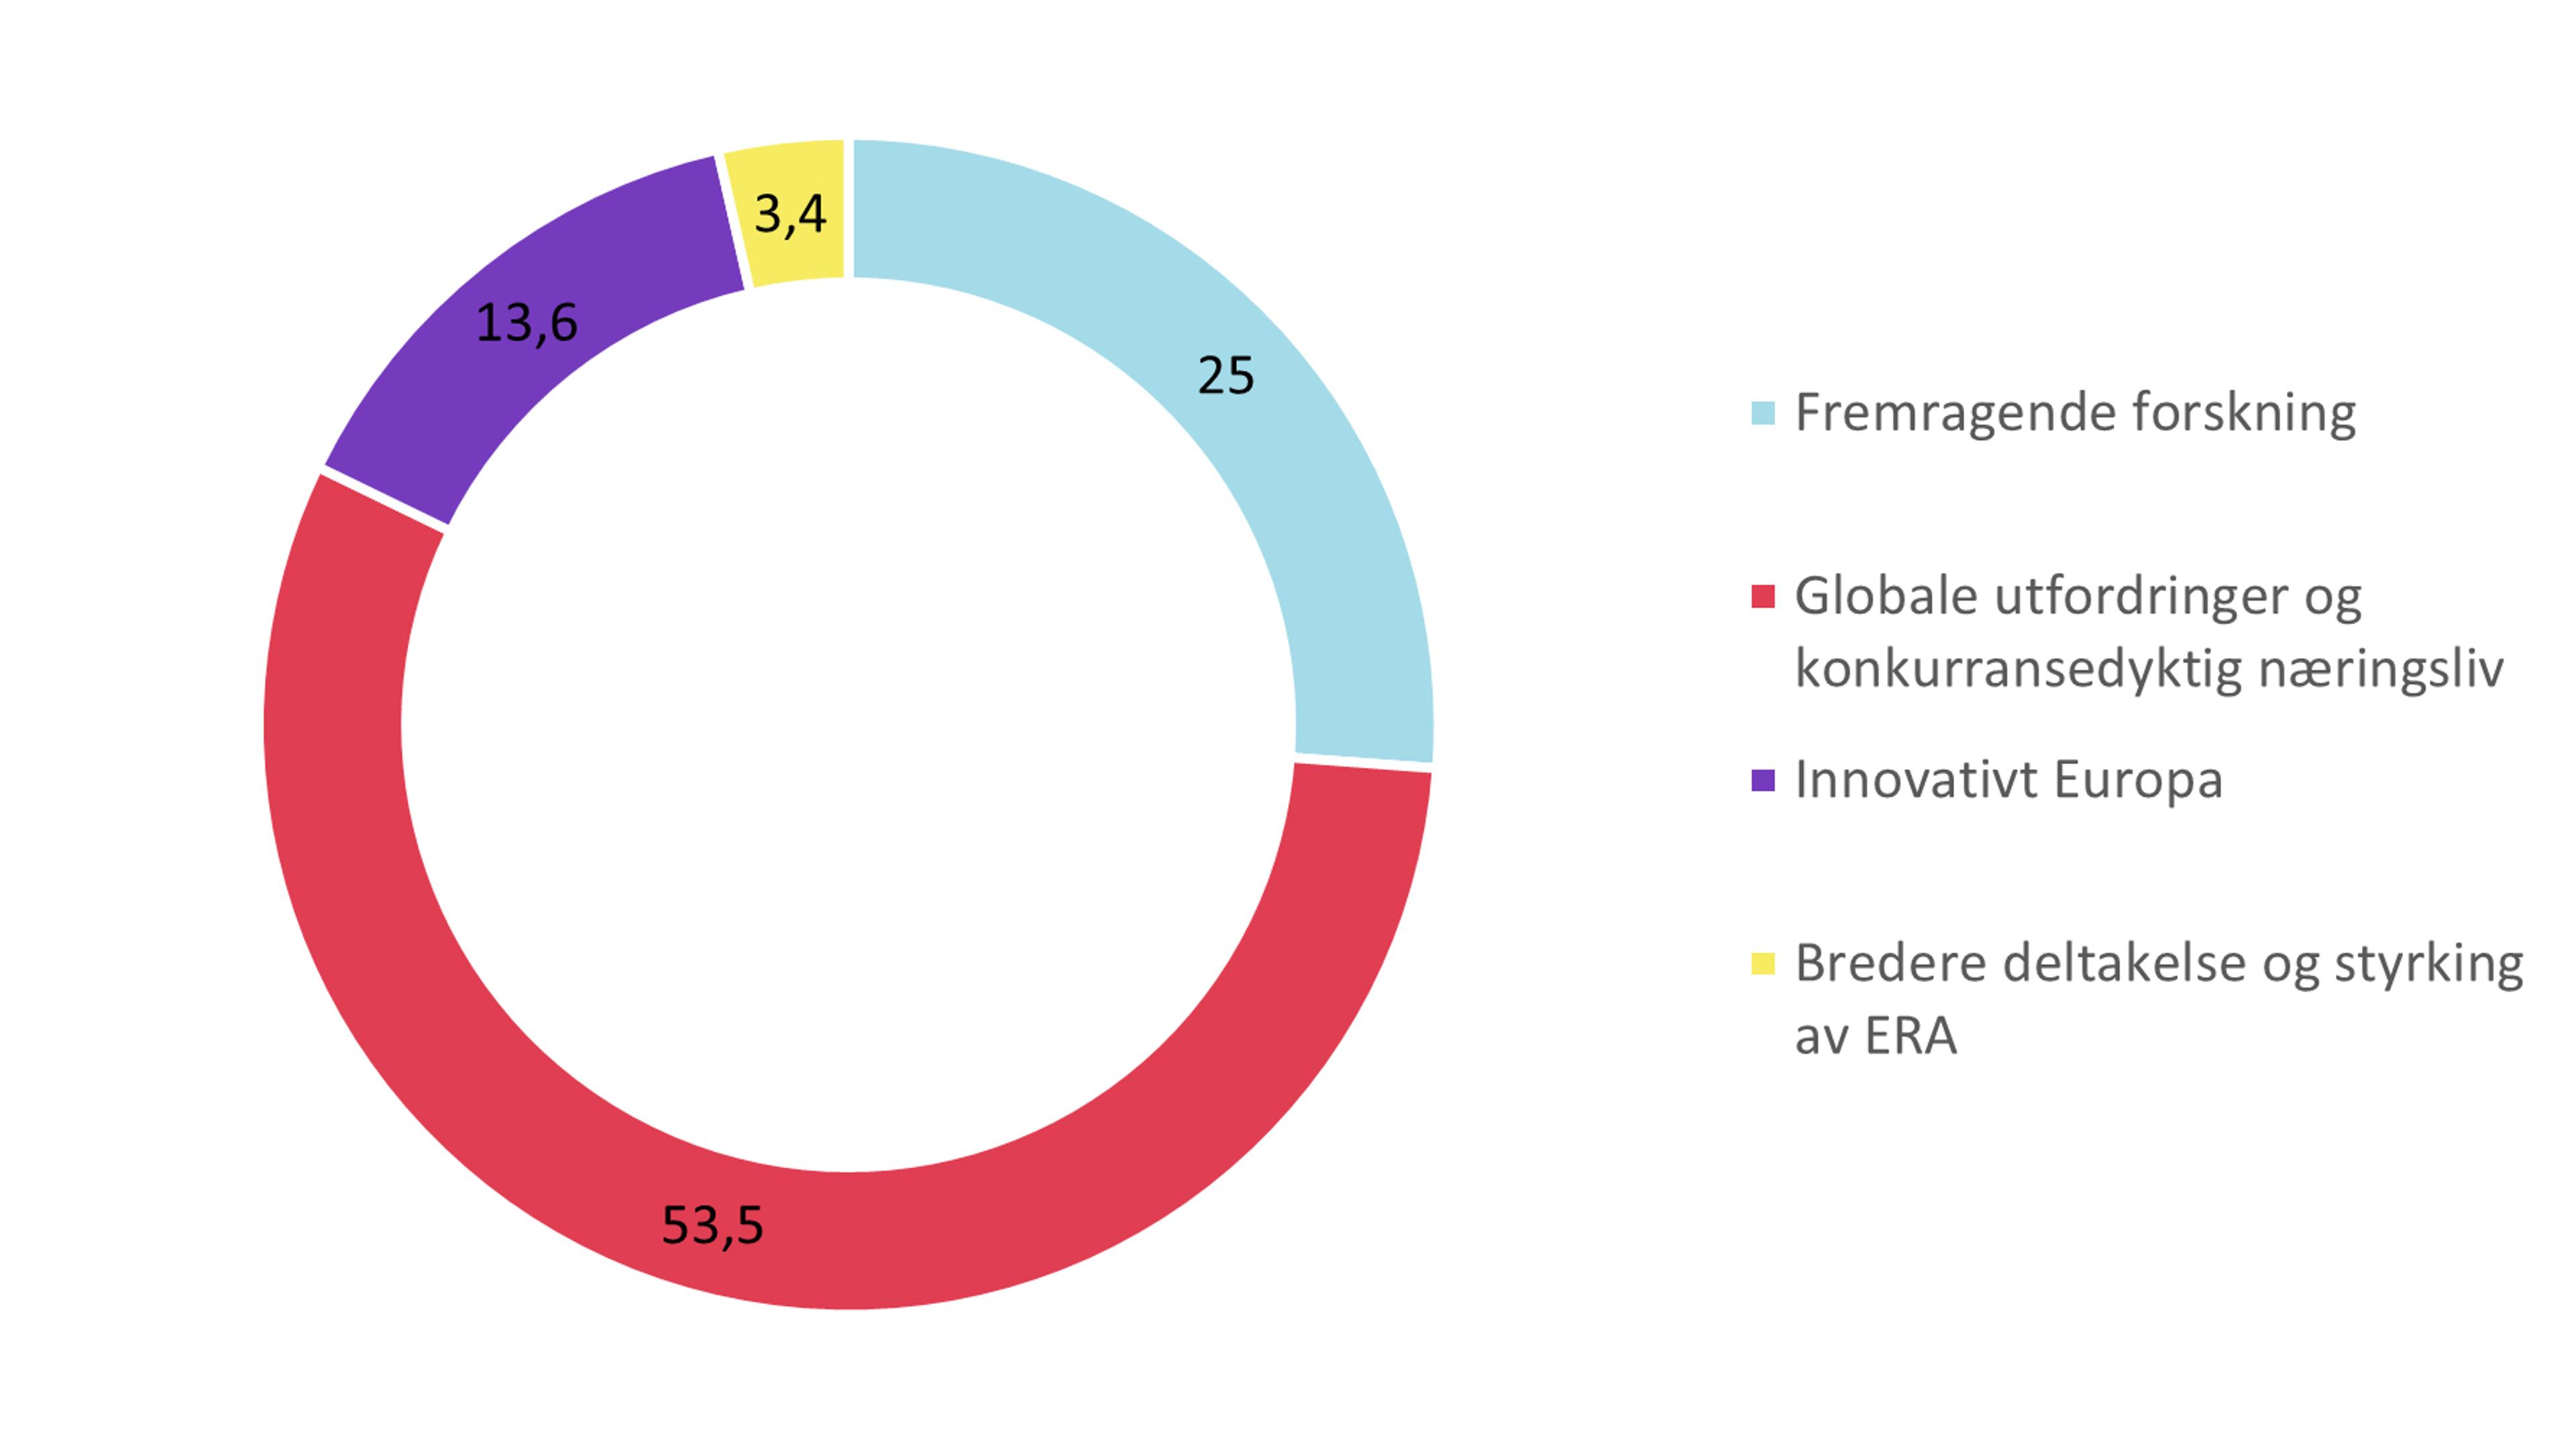 Sirkediagram som viser Horisont Europas budsjett med 53,5% globale utfordringer og konkurransedyktig næringsliv, 25% fremdragende forskning, 13,6% innovativt Europa og 3,4% bredere deltakelse og styrking av ERA